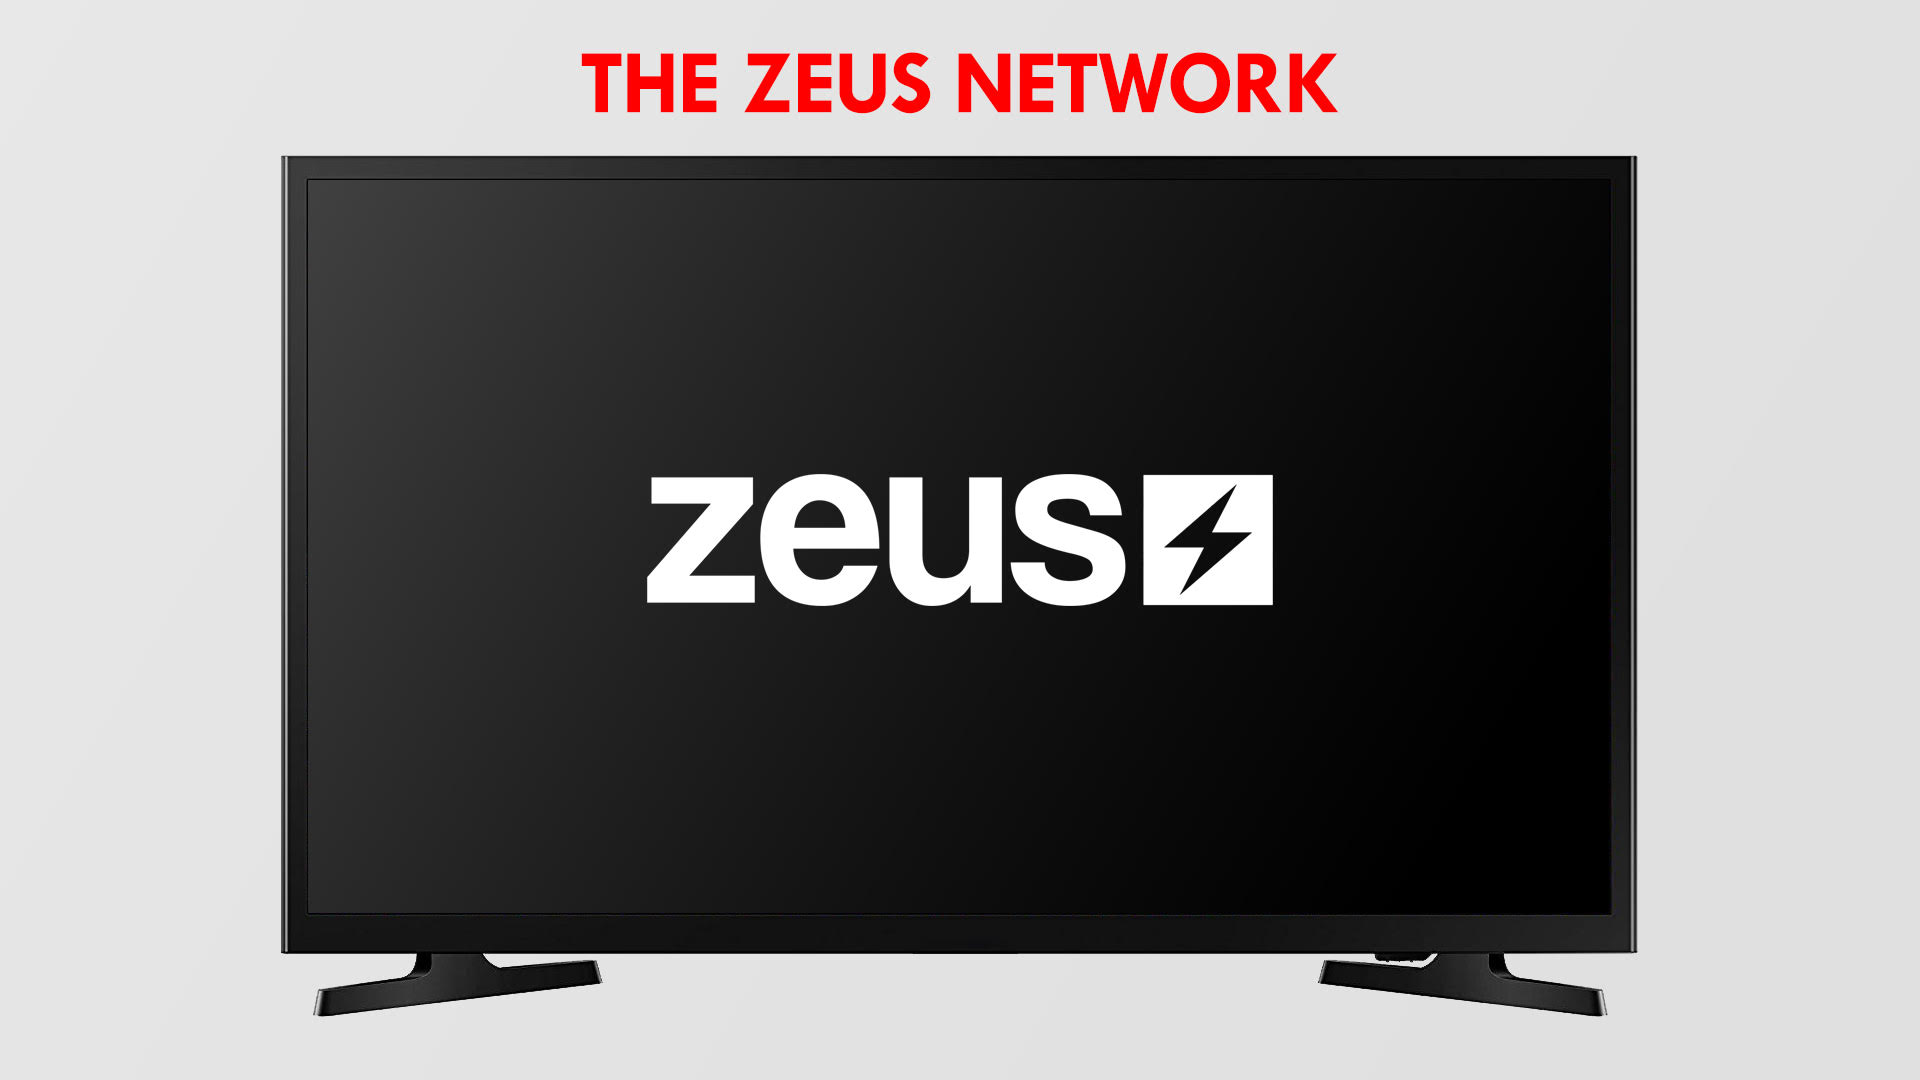 How To Get Zeus App On Vizio Smart TV